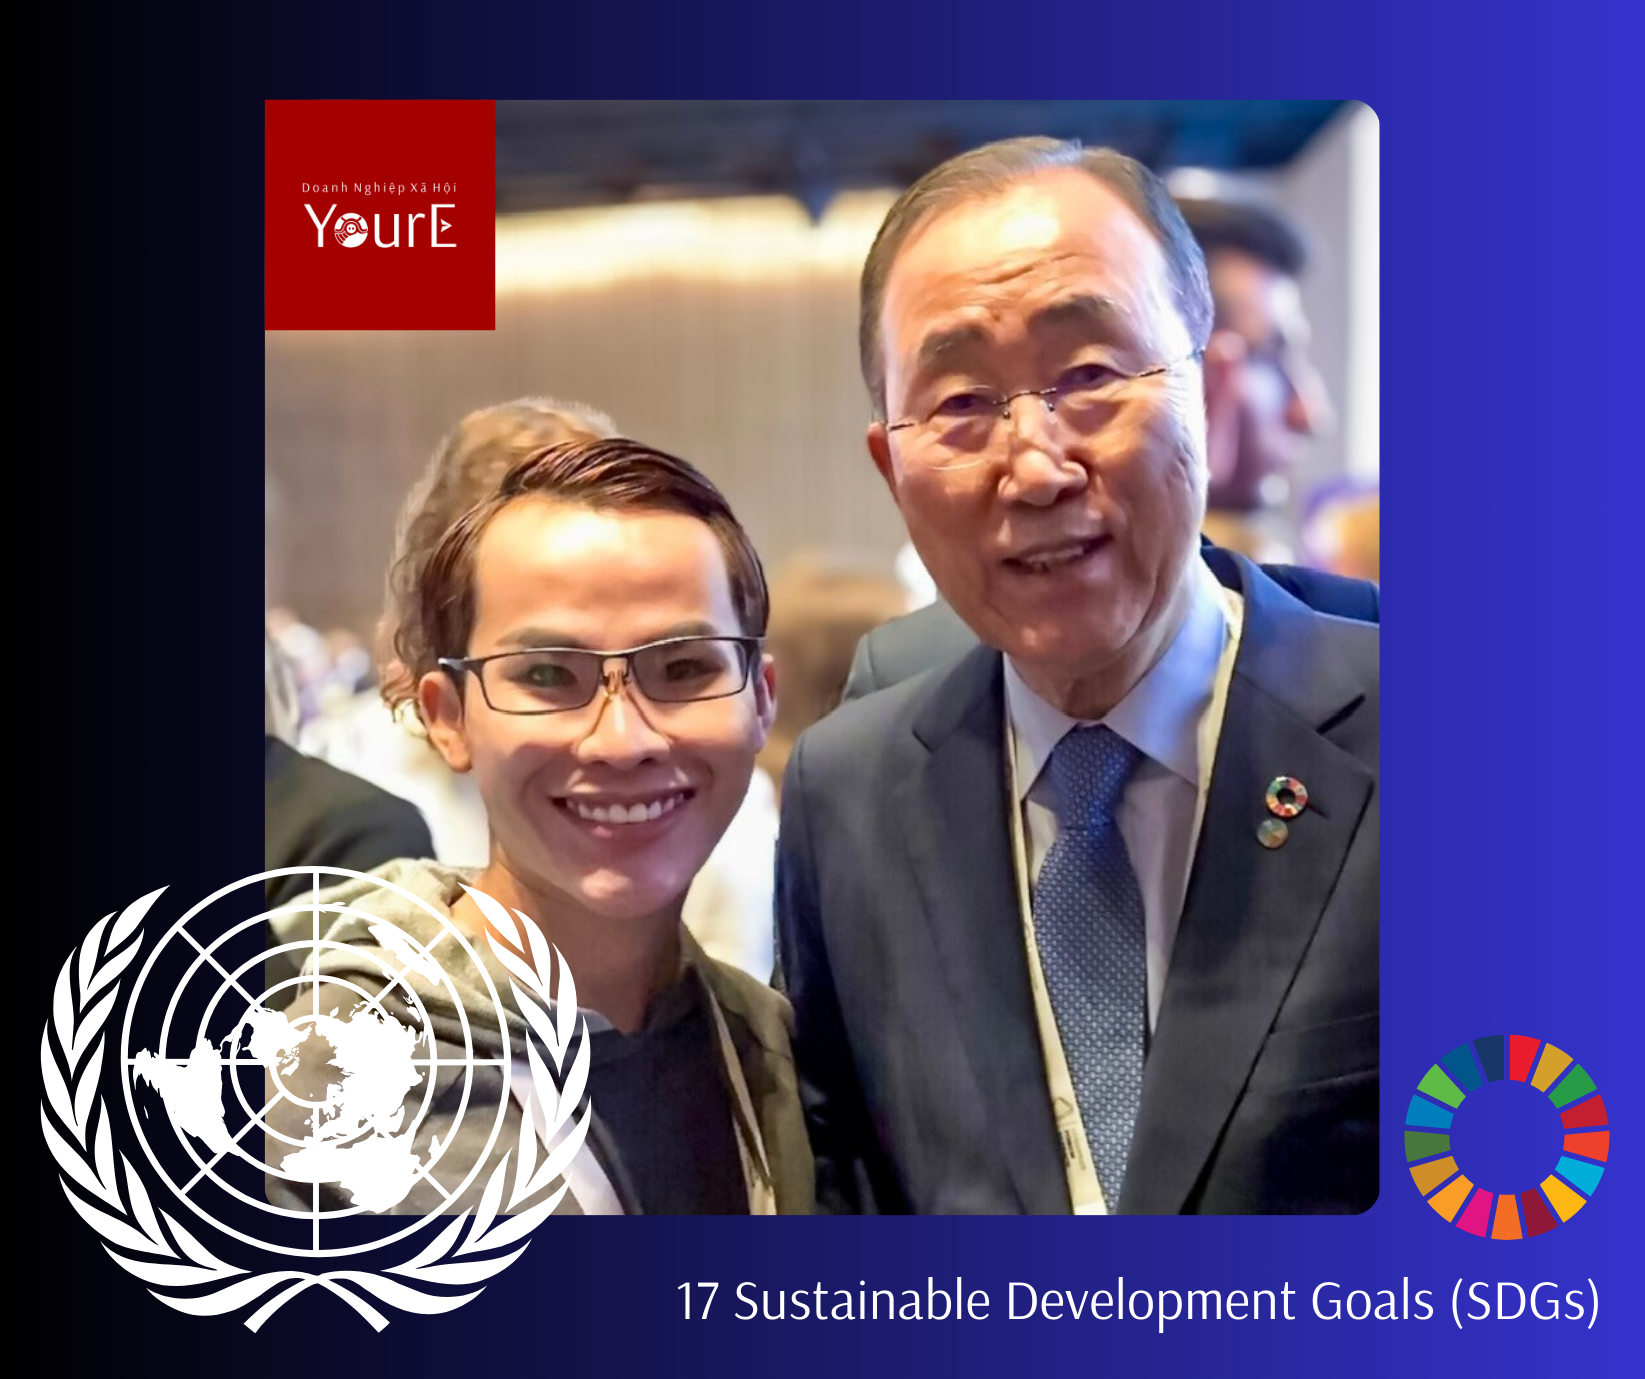 Thầy Phong cùng nguyên Tổng Thư Ký Liên Hiêp Quốc, ngài Ban Ki-moon17 Sustainable Development Goals (SDGs)